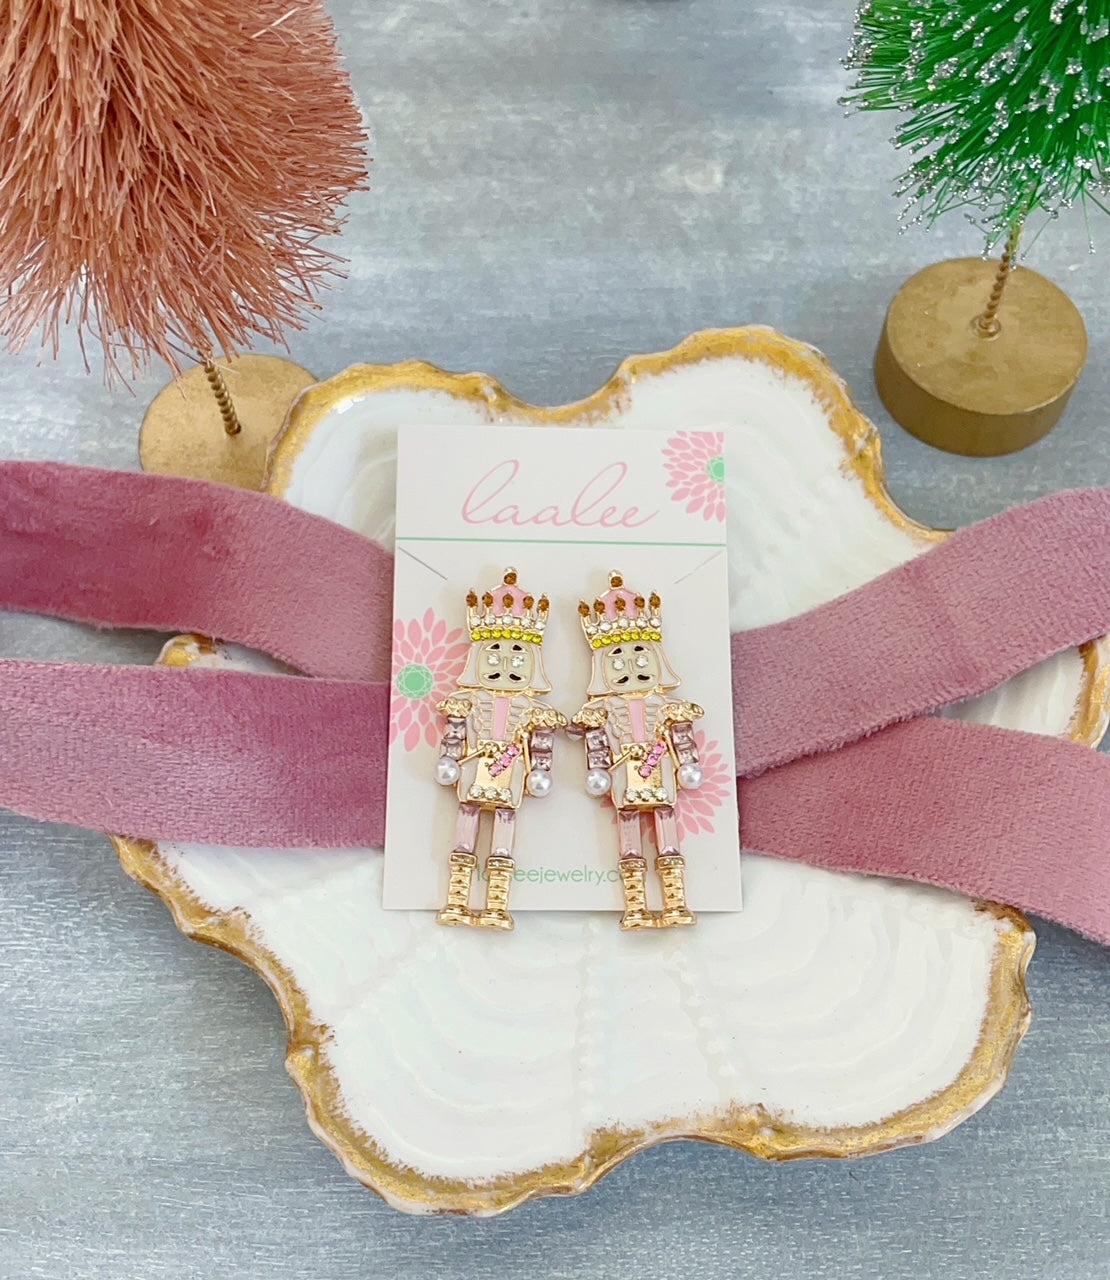 PREORDER - Pink Nutcracker Earrings, Nutcracker Jewelry, Statement Christmas Jewelry, Stud Earrings